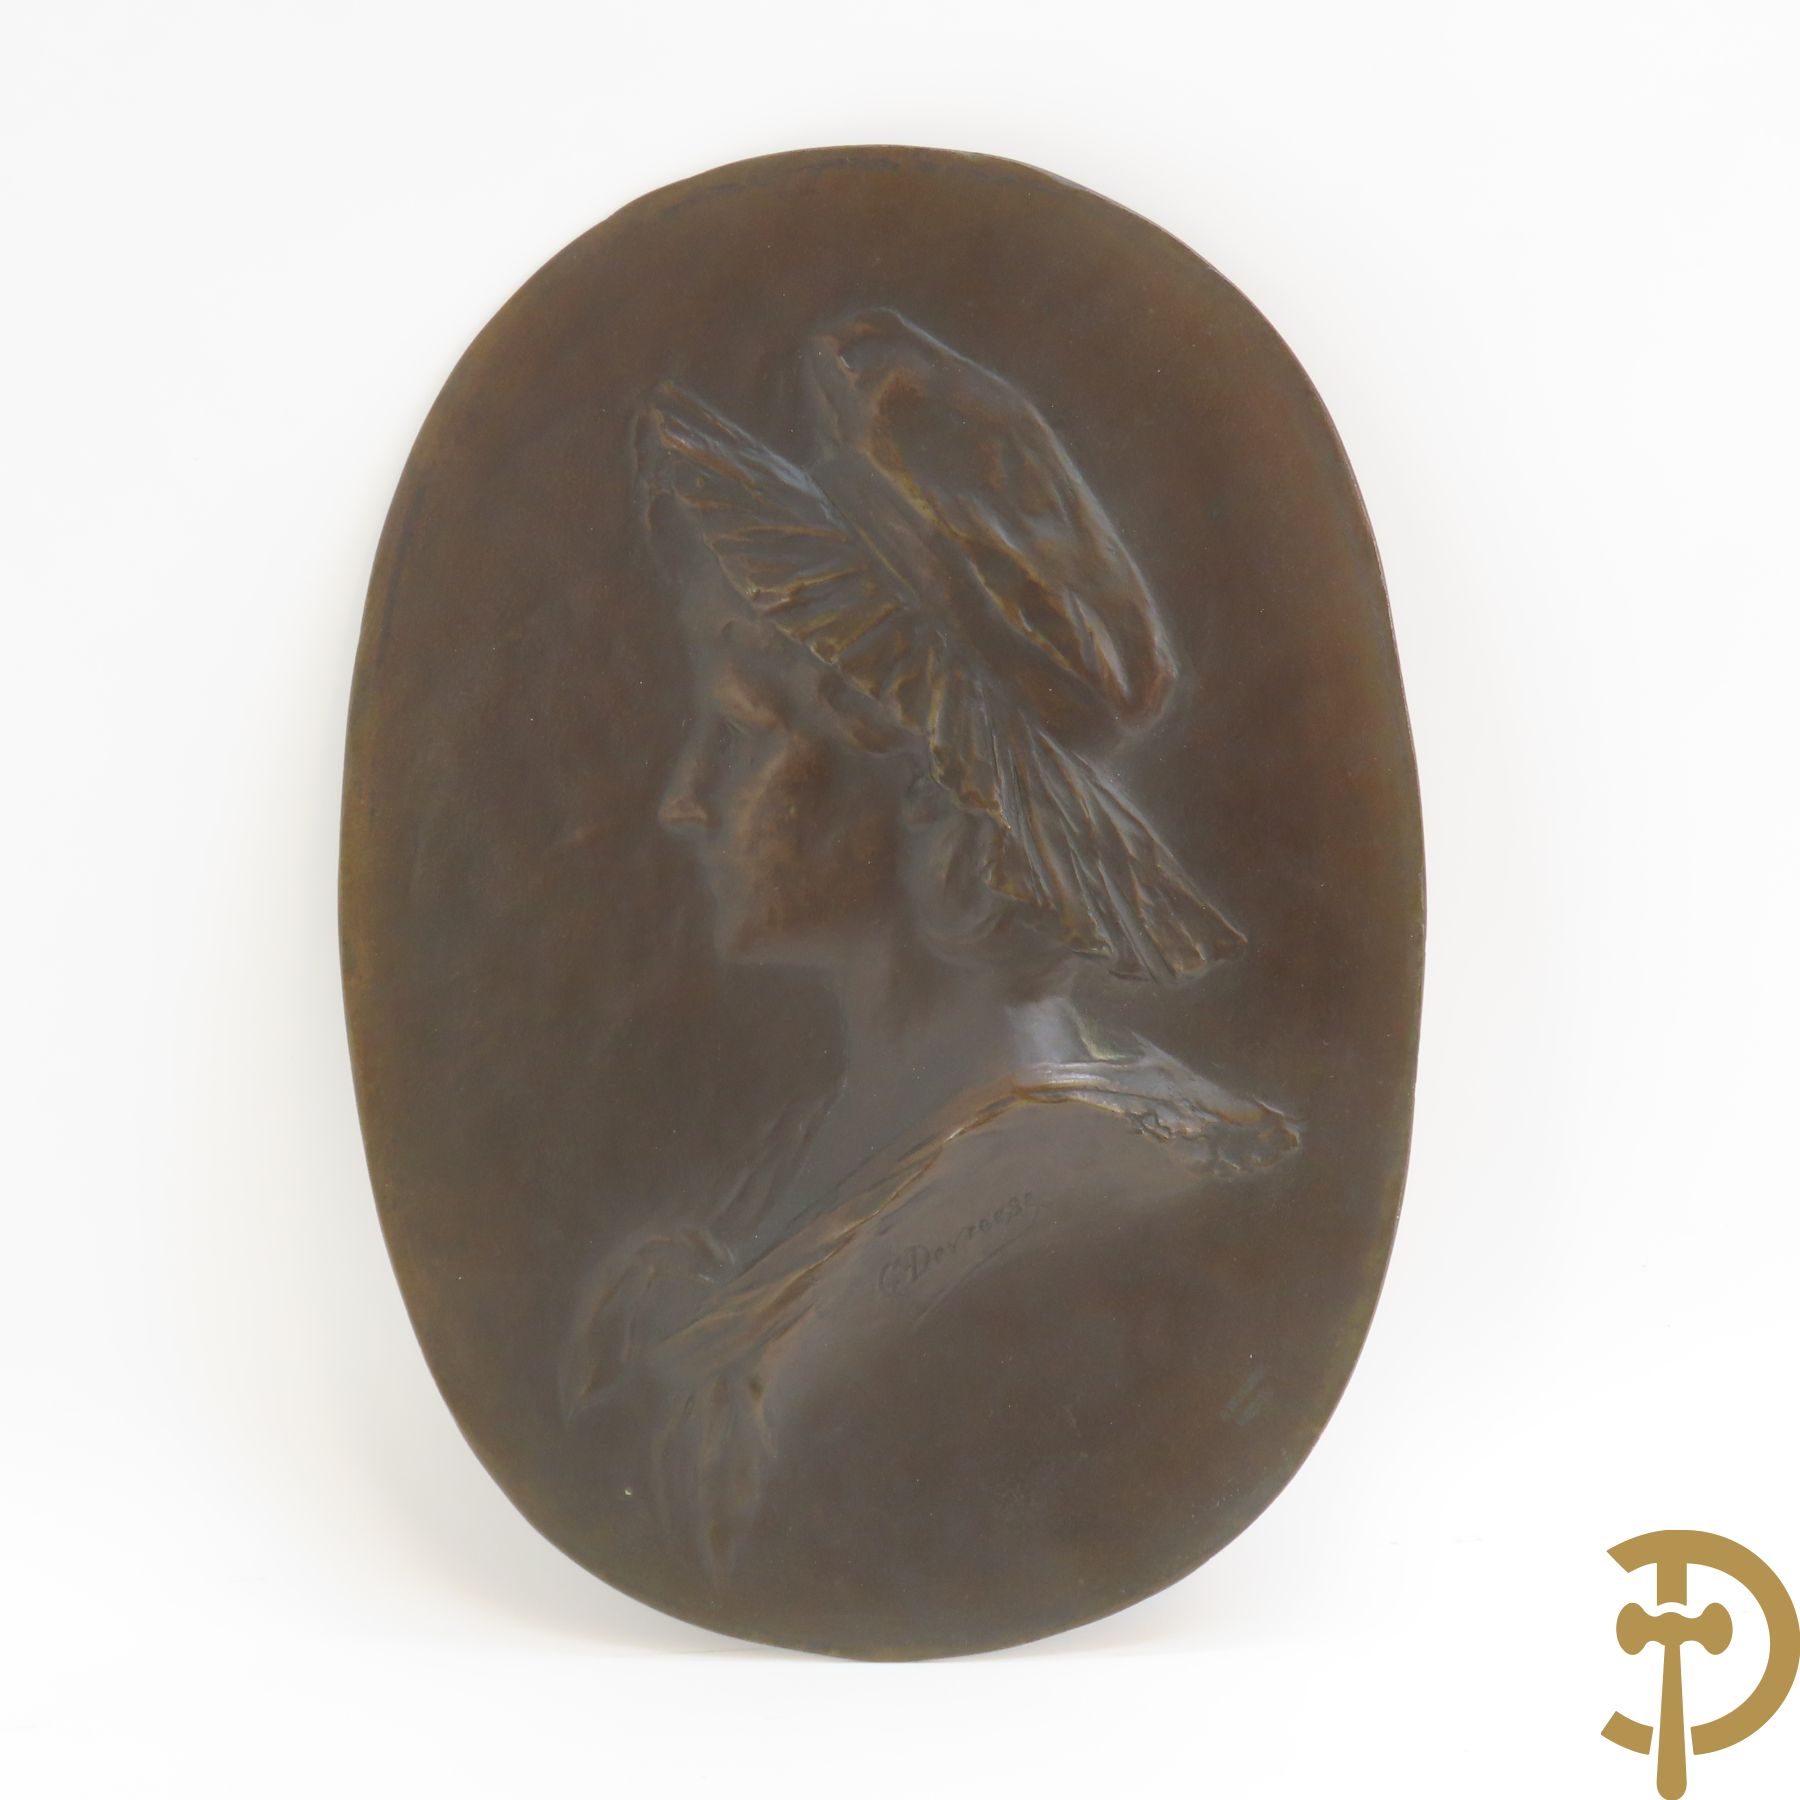 DEVREESE G. get. 'Profiel van dame' ovale bronzen plakkette - door de gieterij Petermann J. Bruxelles